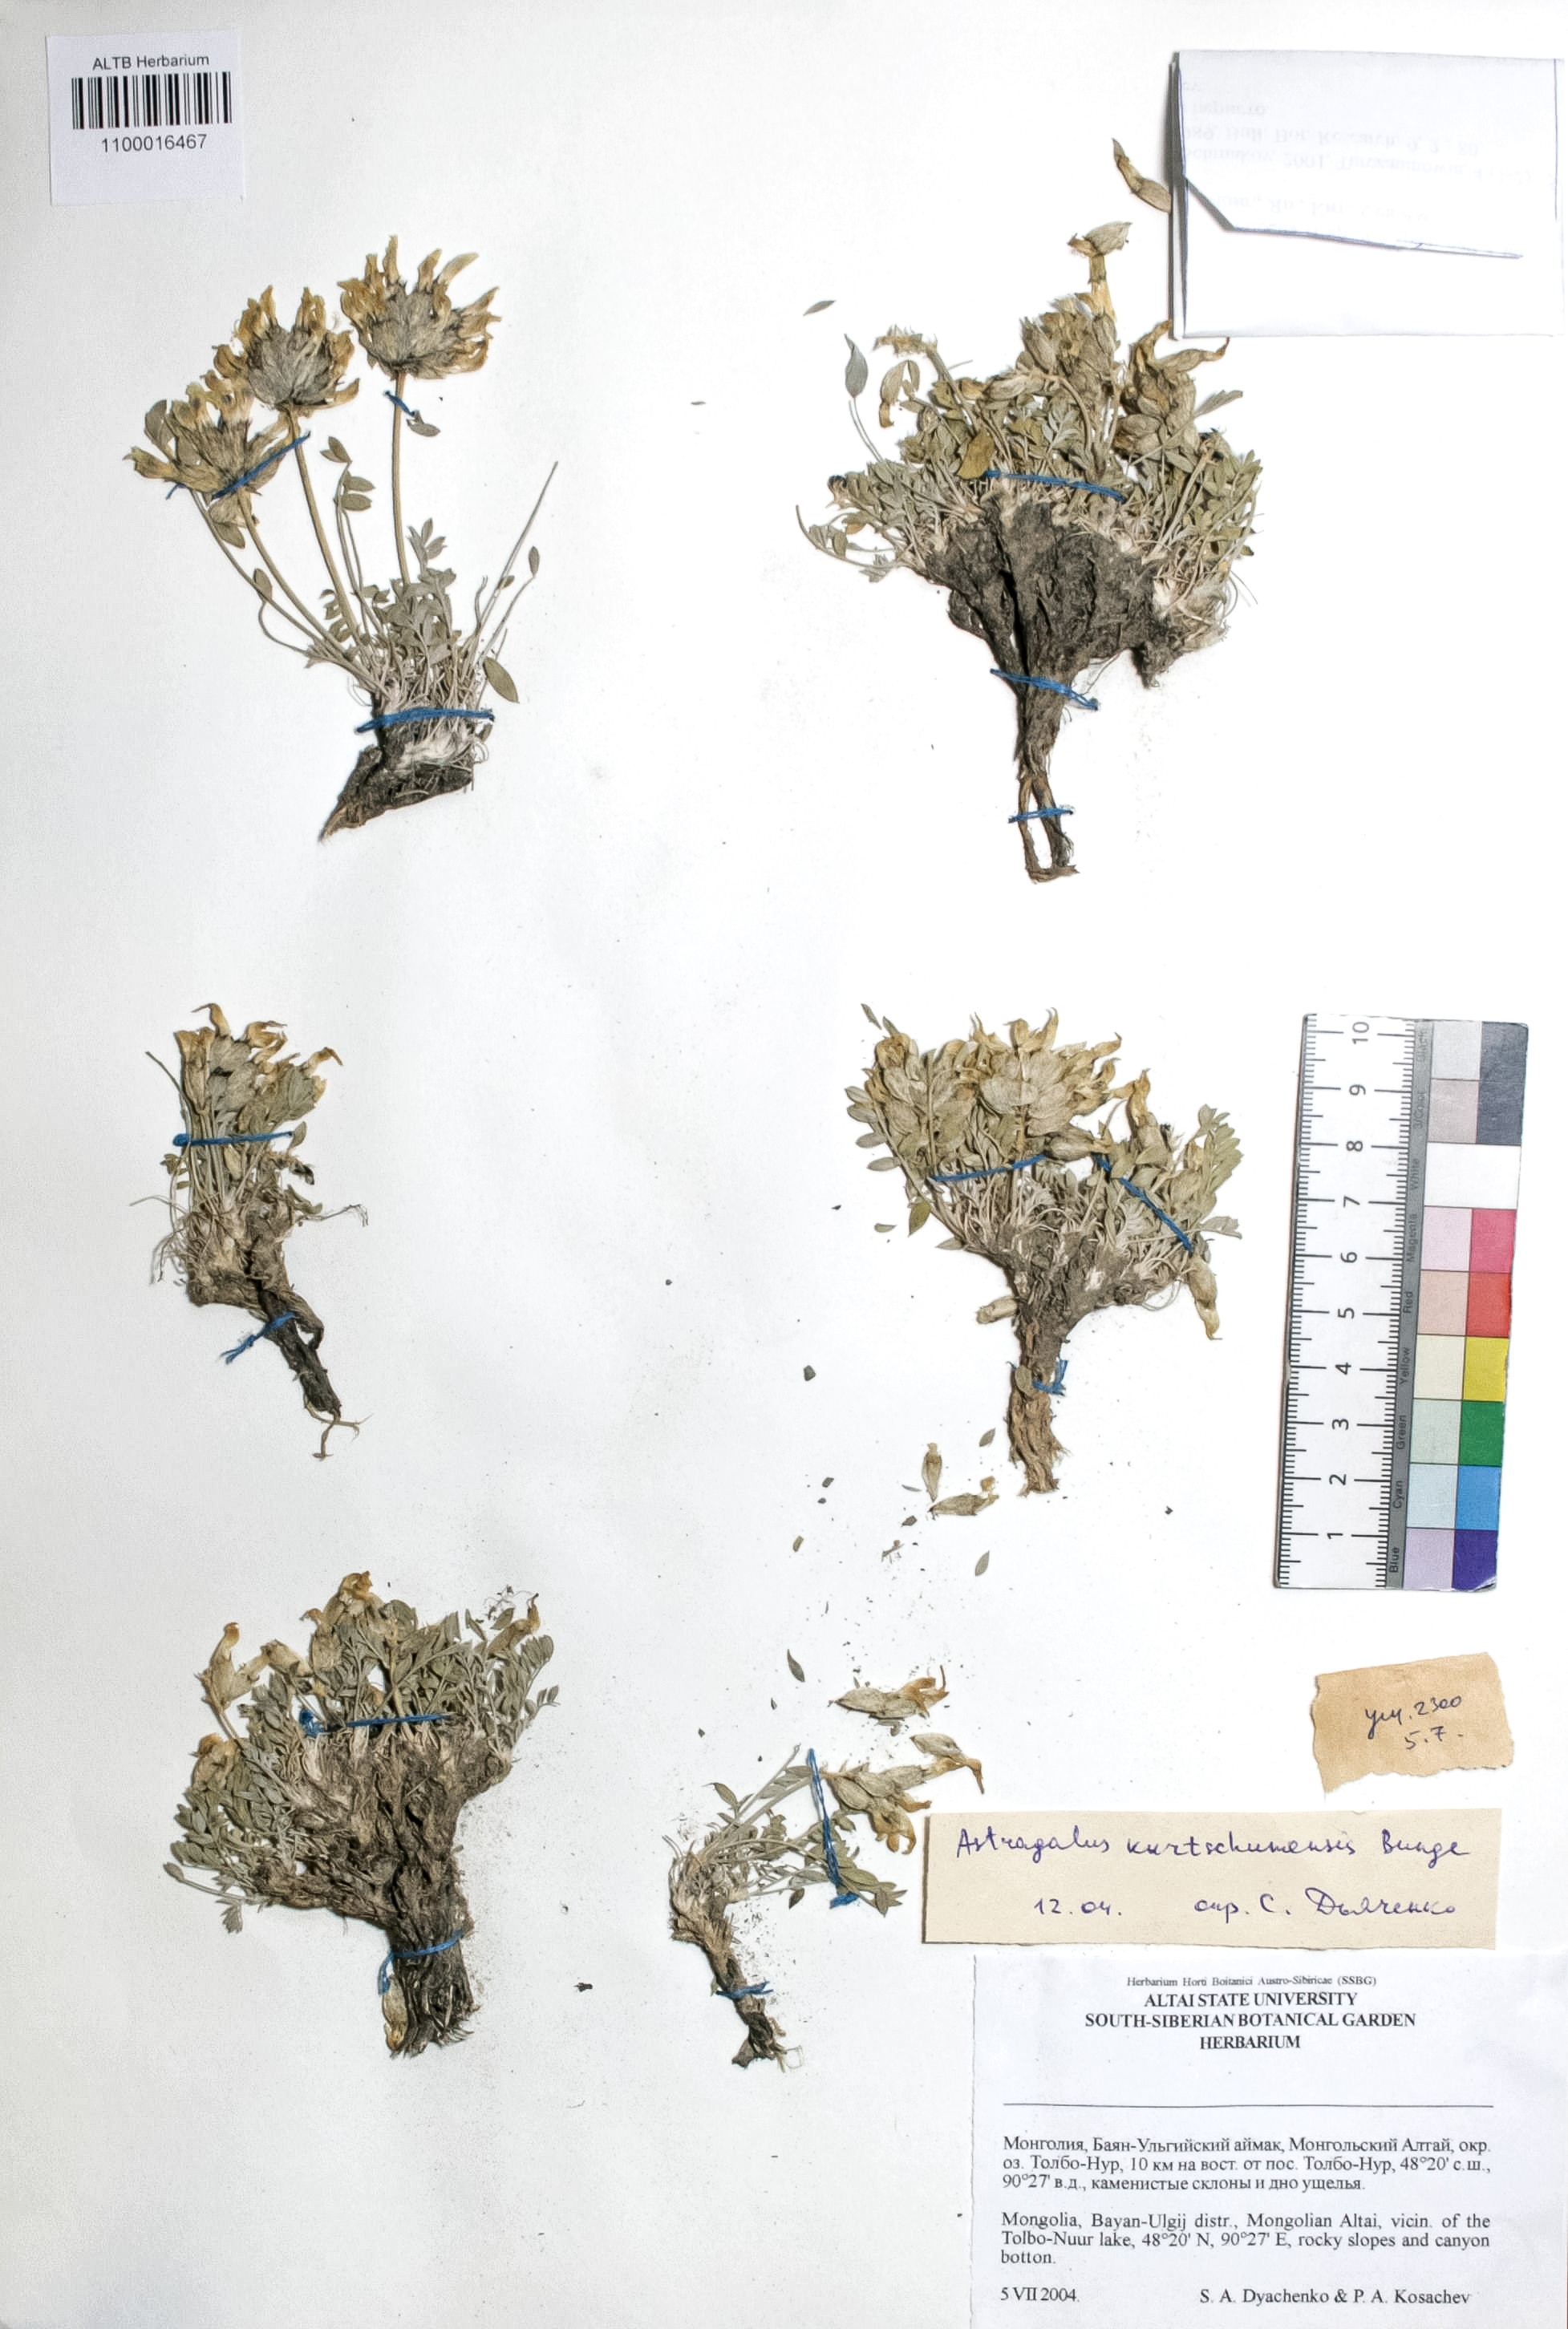 Astragalus kurtschumensis Bunge